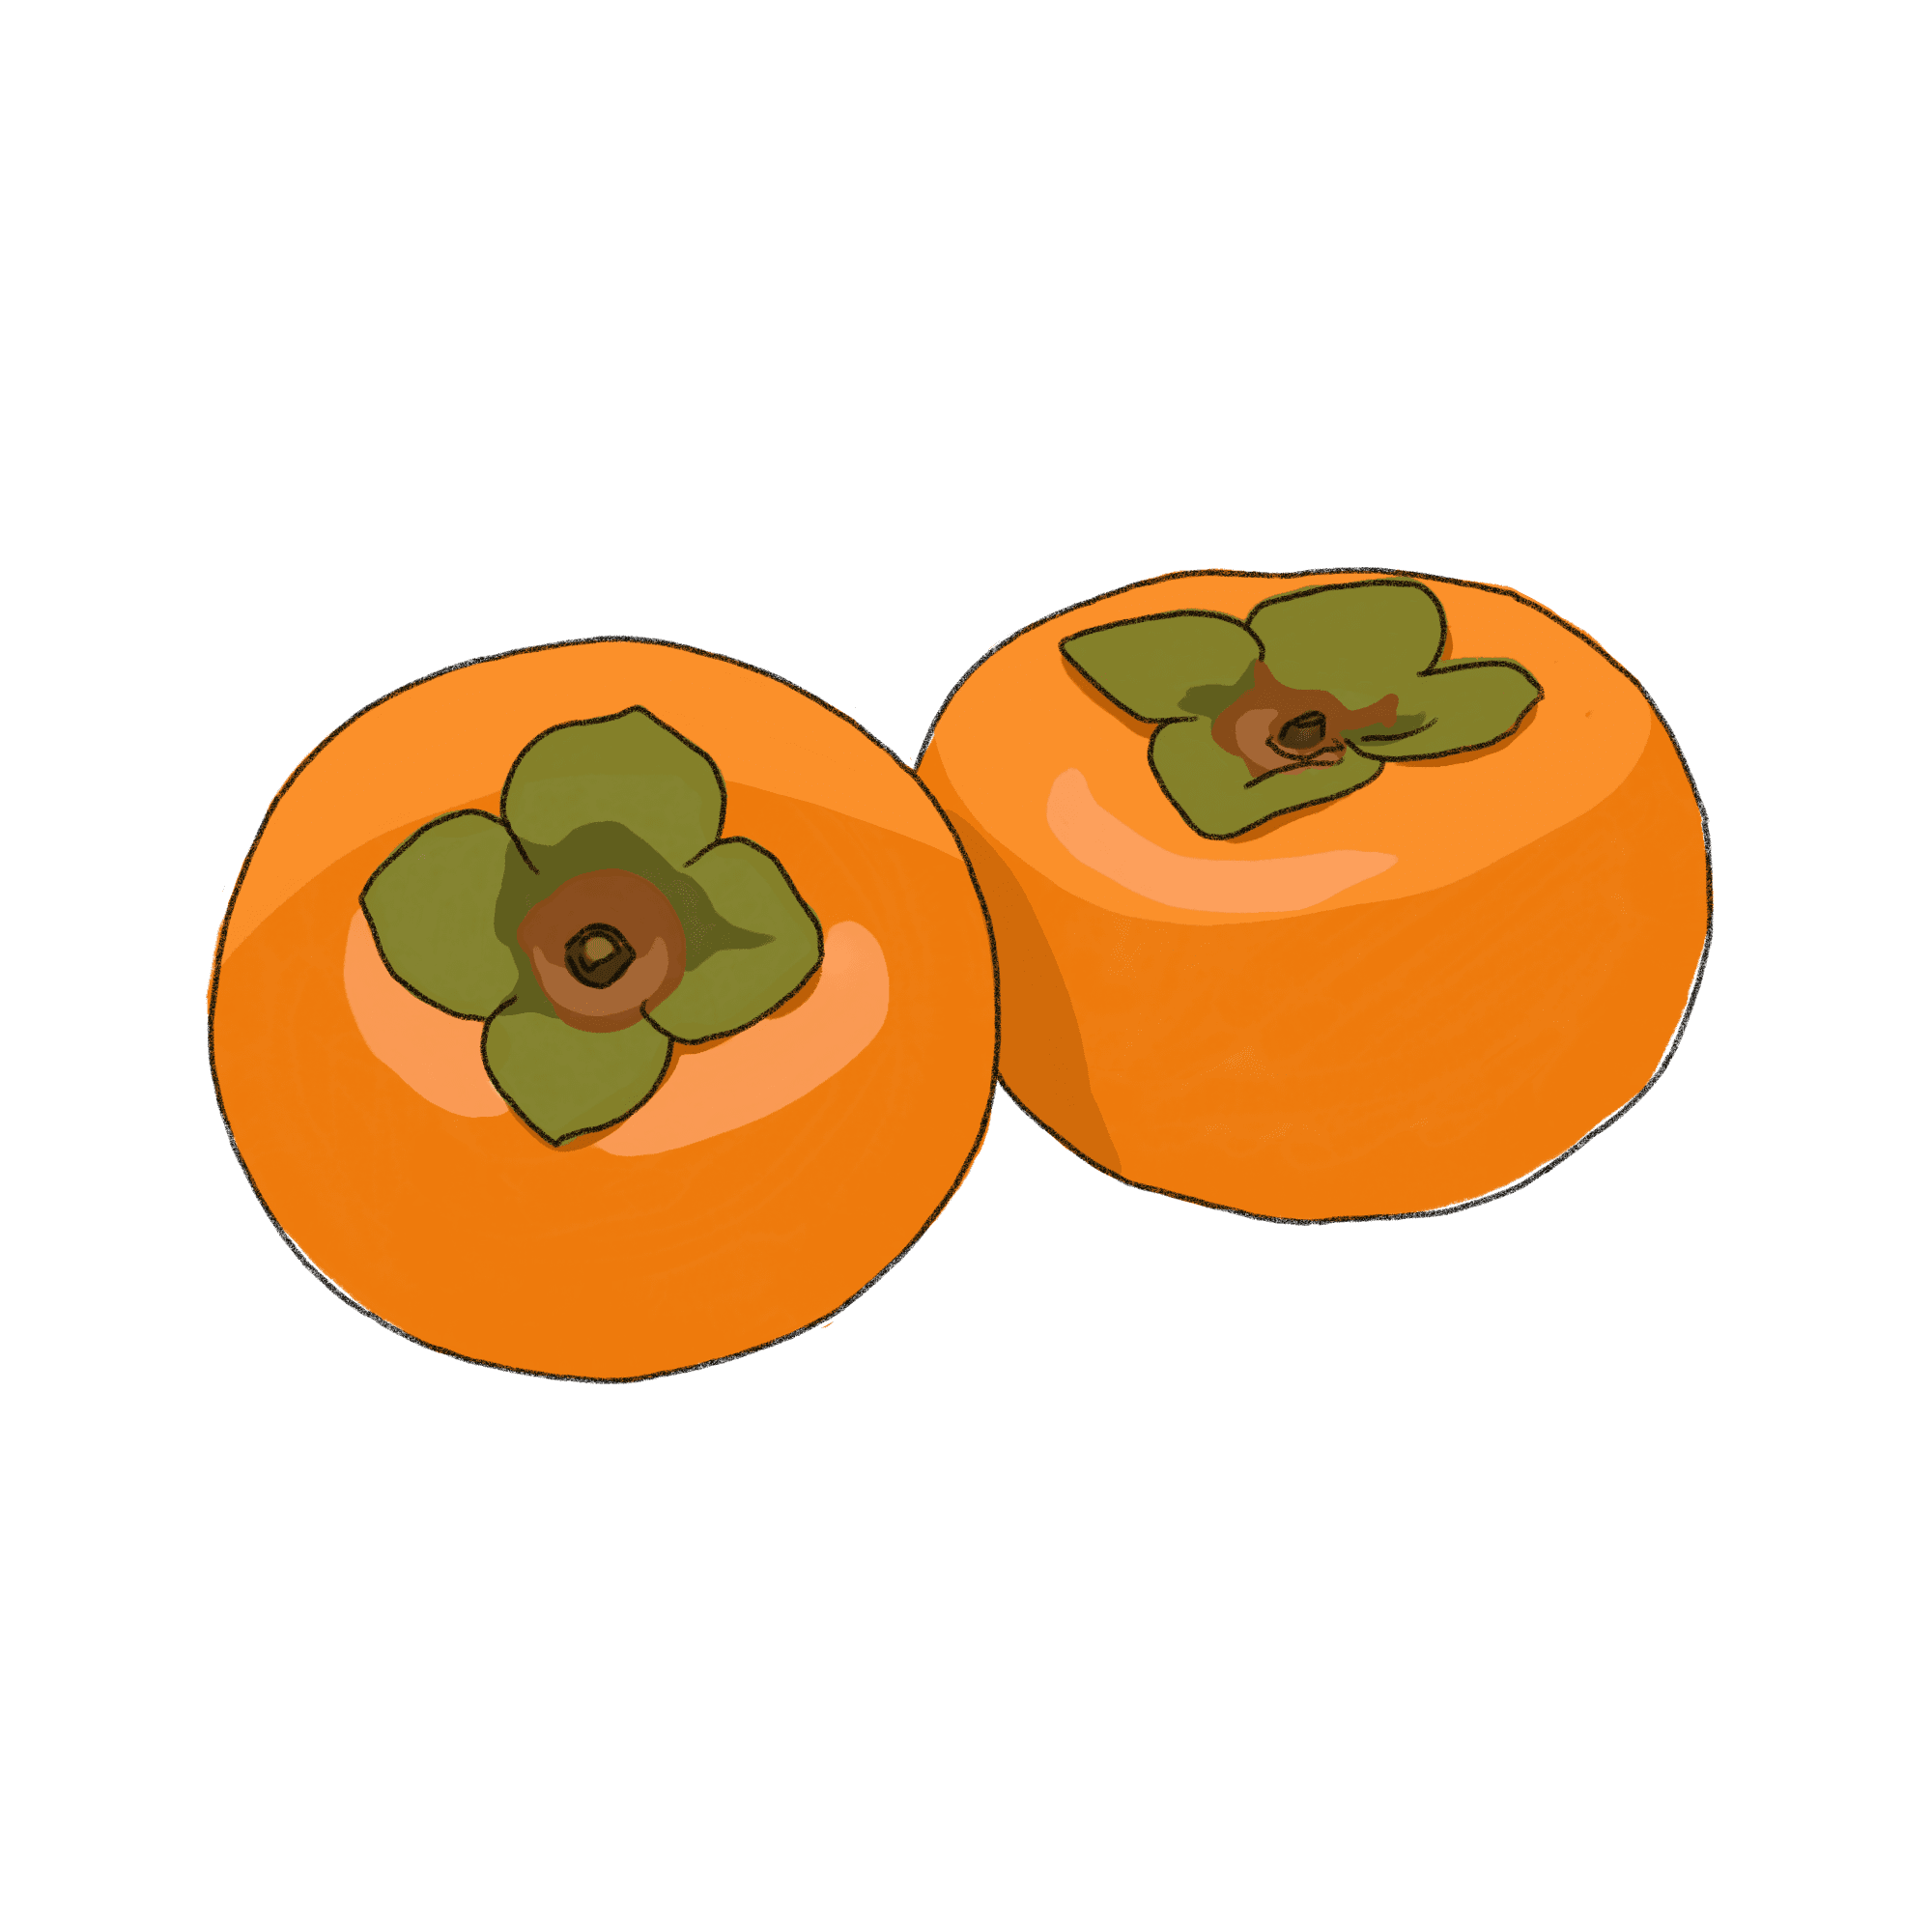 柿のイラスト